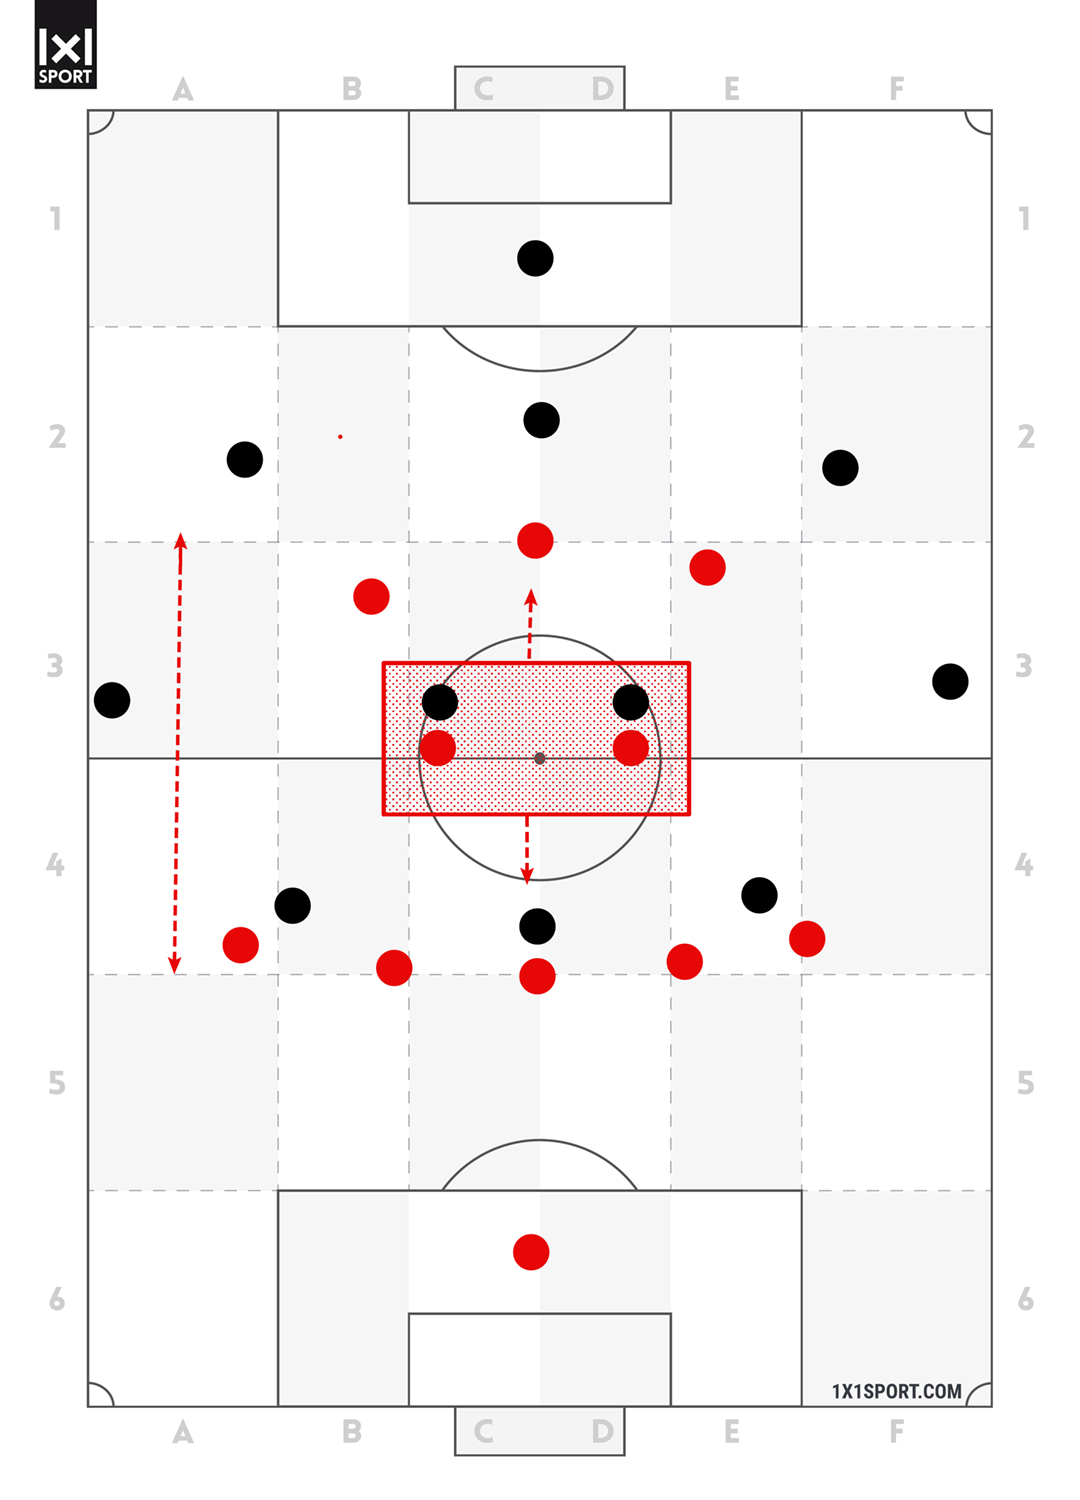 Durch den großen Abstand zwischen der ersten und letzten Pressinglinie müssen die beiden zentralen Mittelfeldspieler einen sehr langen Raum sichern.